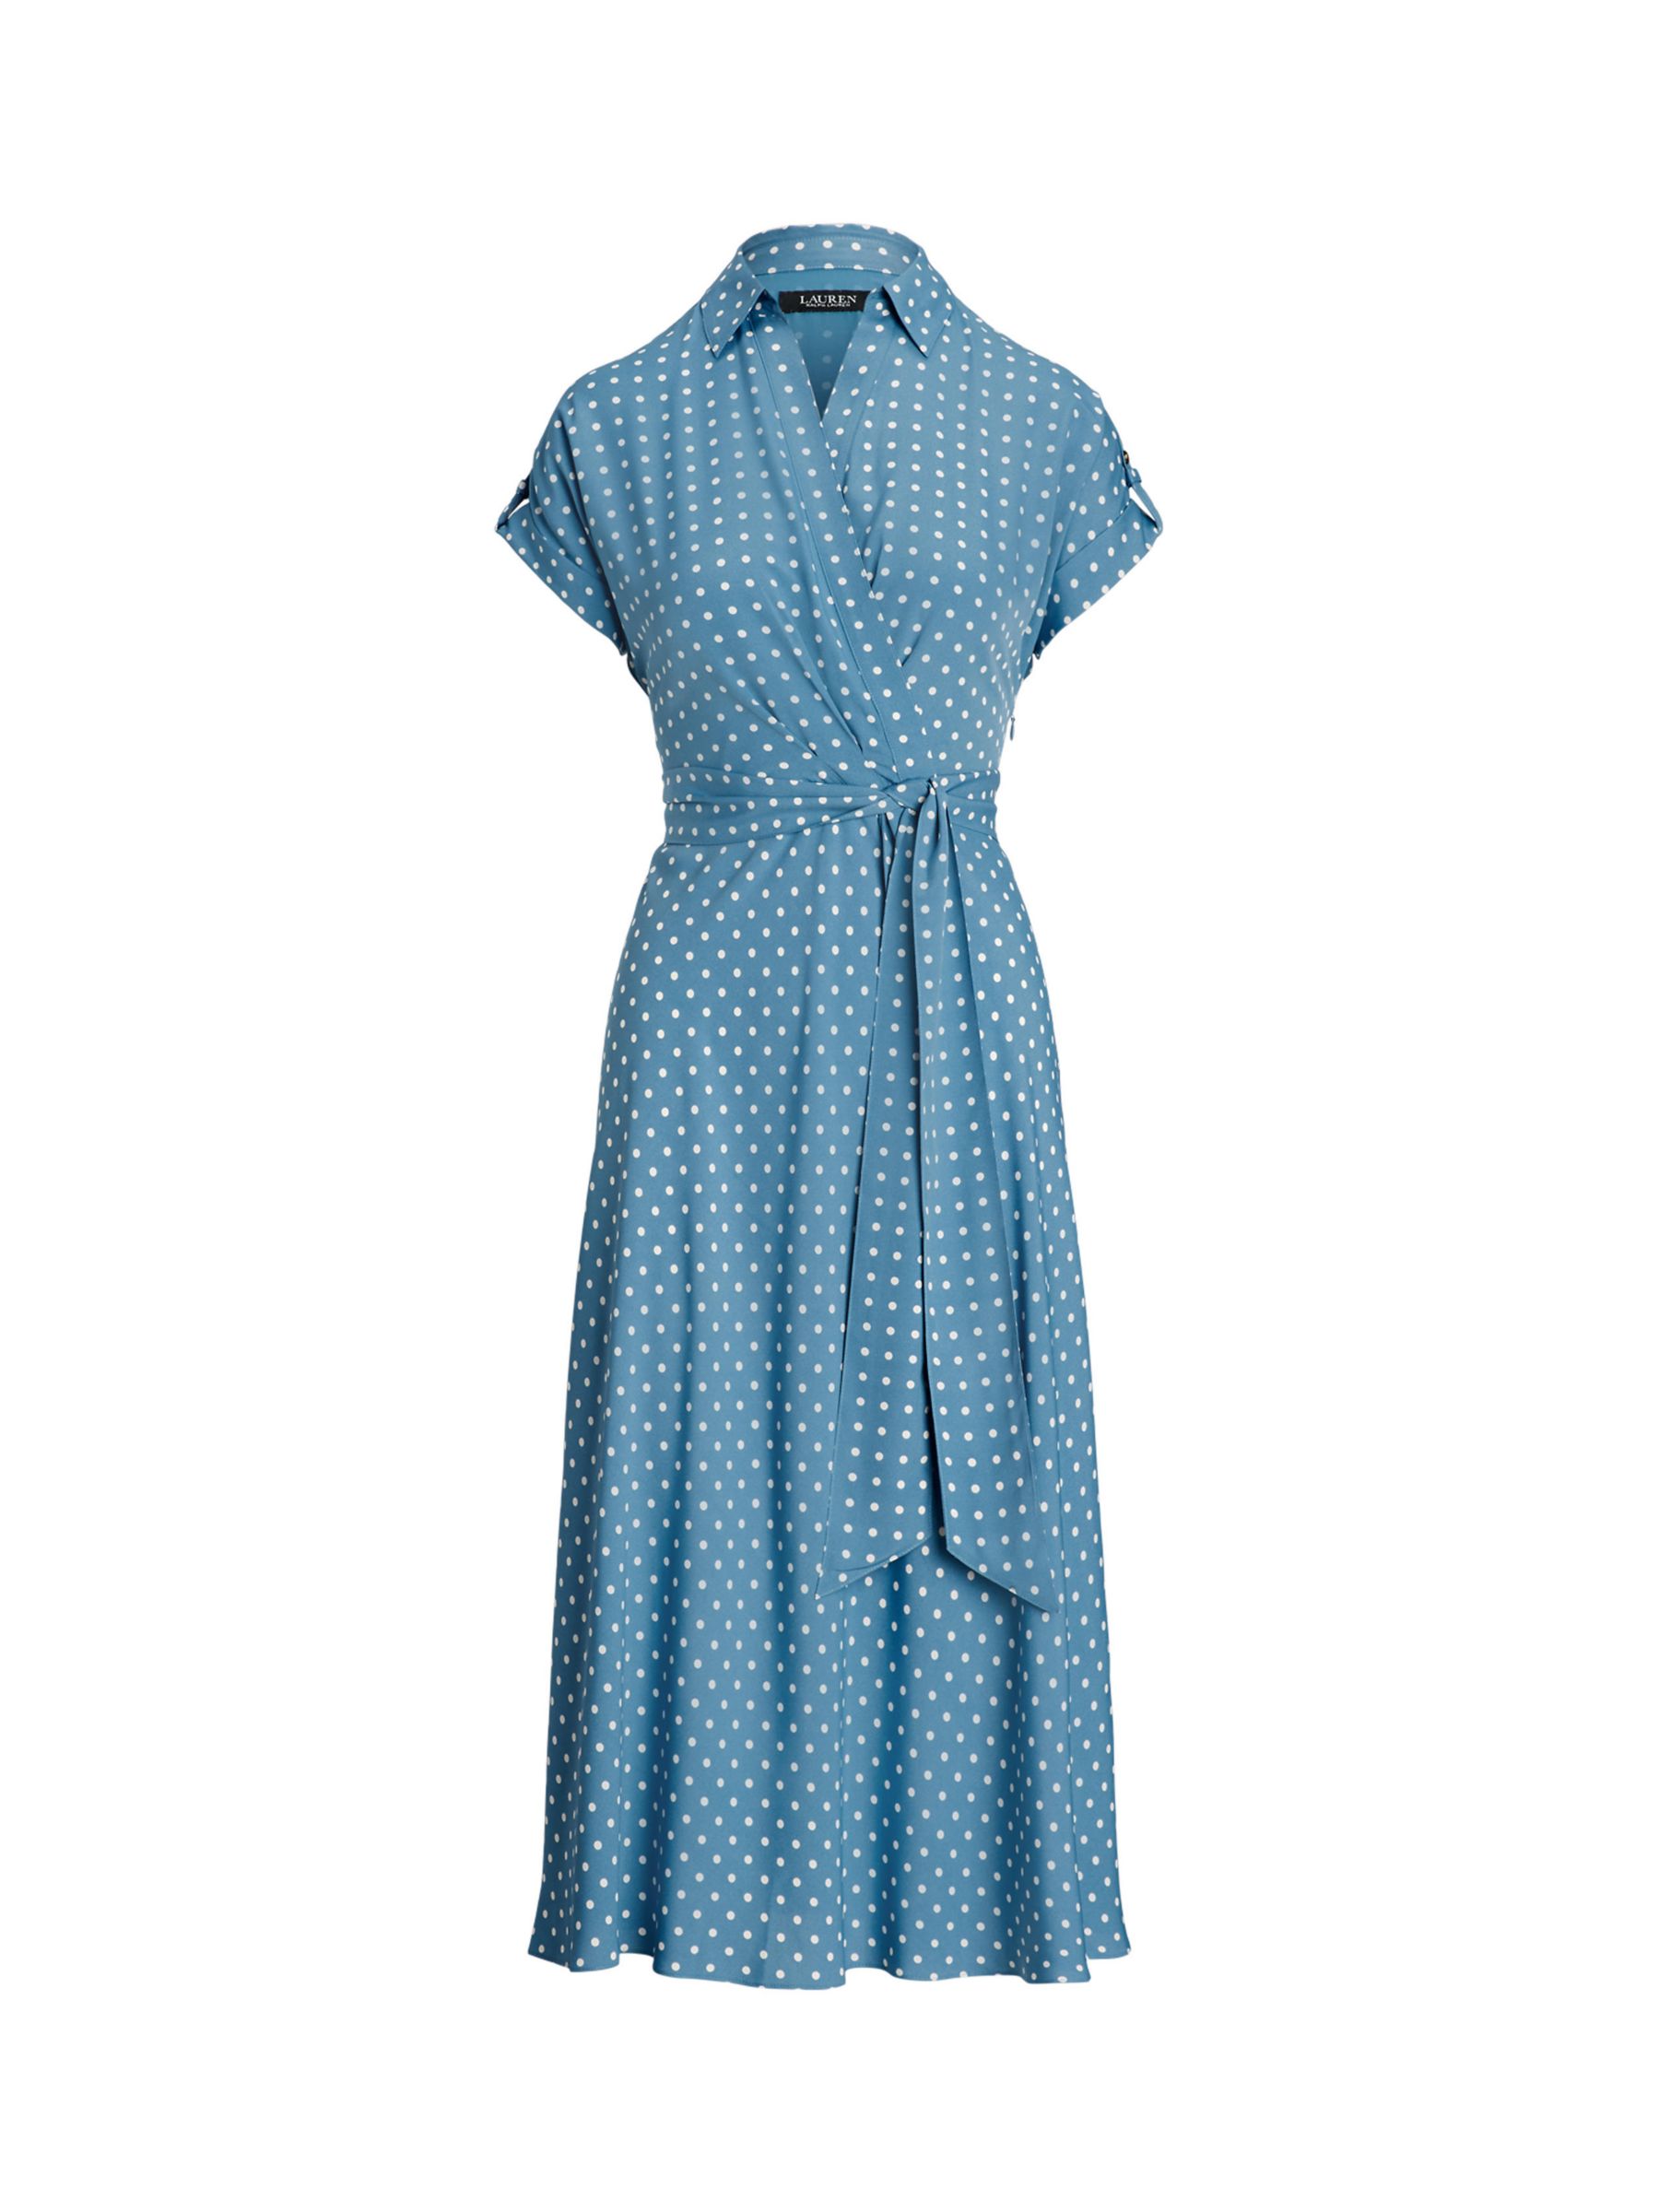 Lauren Ralph Lauren Fratillo Polka Dot Wrap Dress, Blue/Multi, 22